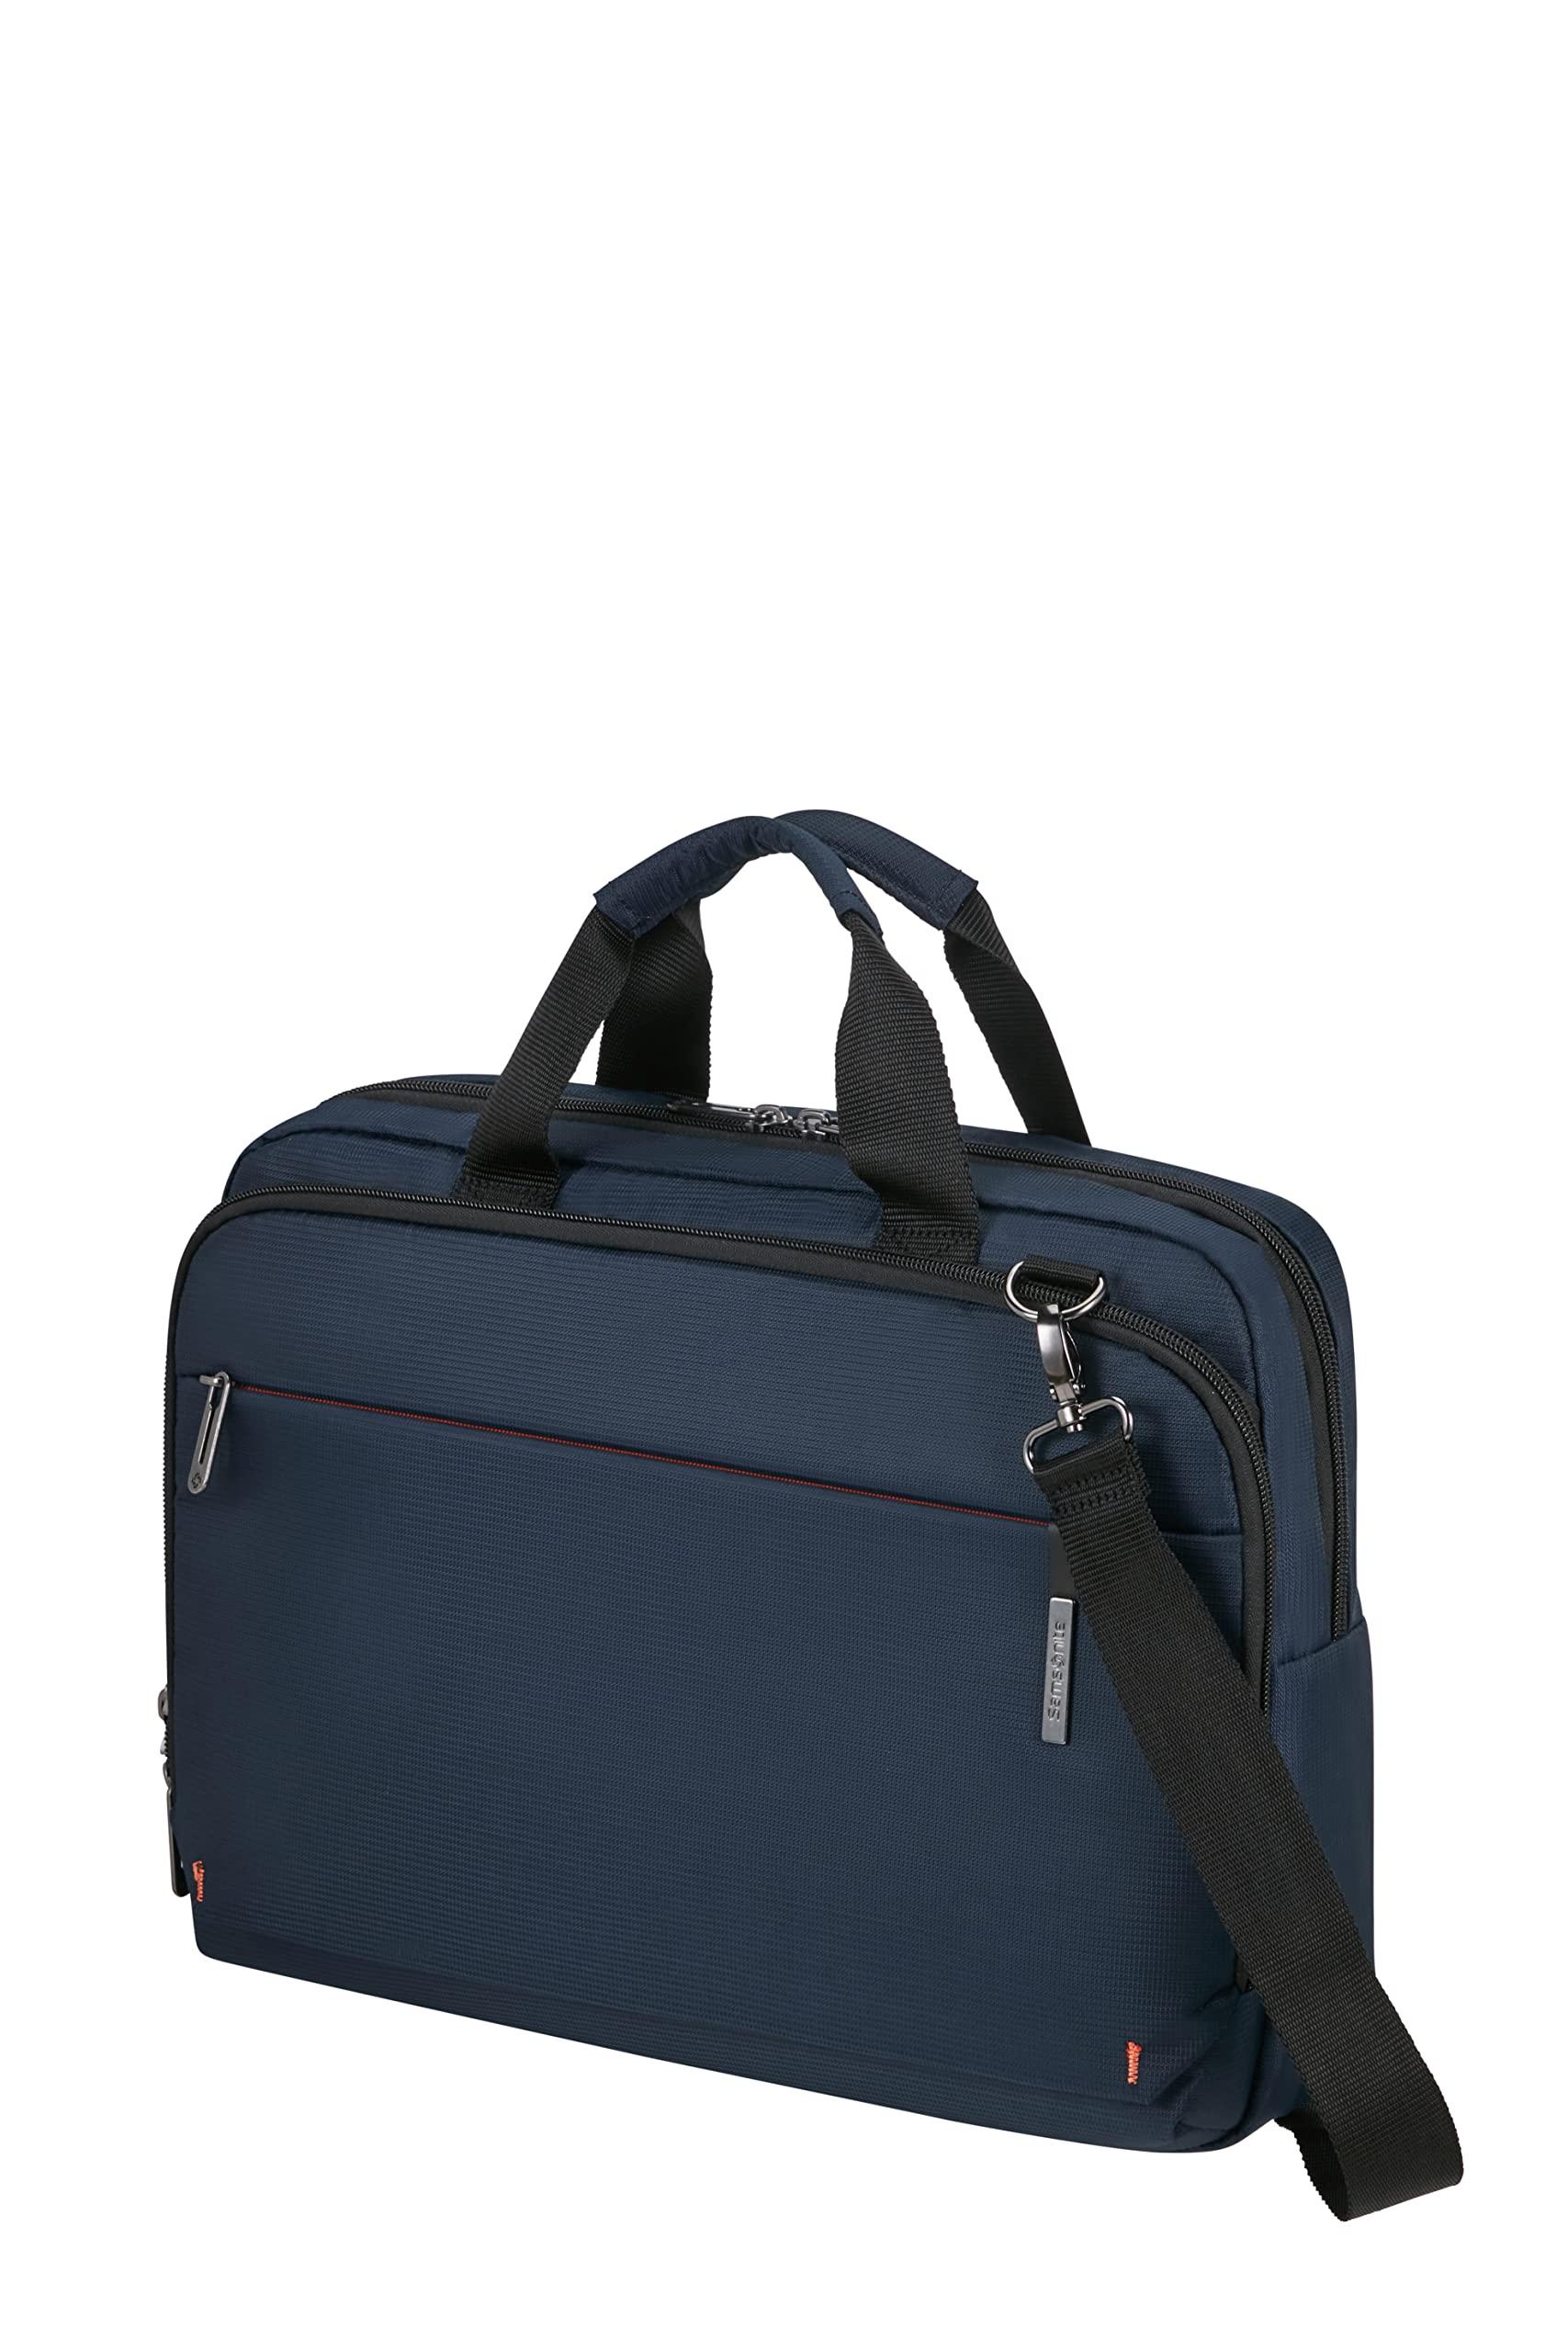 Ca3111b2 Sac Piquadro pour homme en coloris Bleu Homme Sacs Porte-documents et sacs pour ordinateur portable 